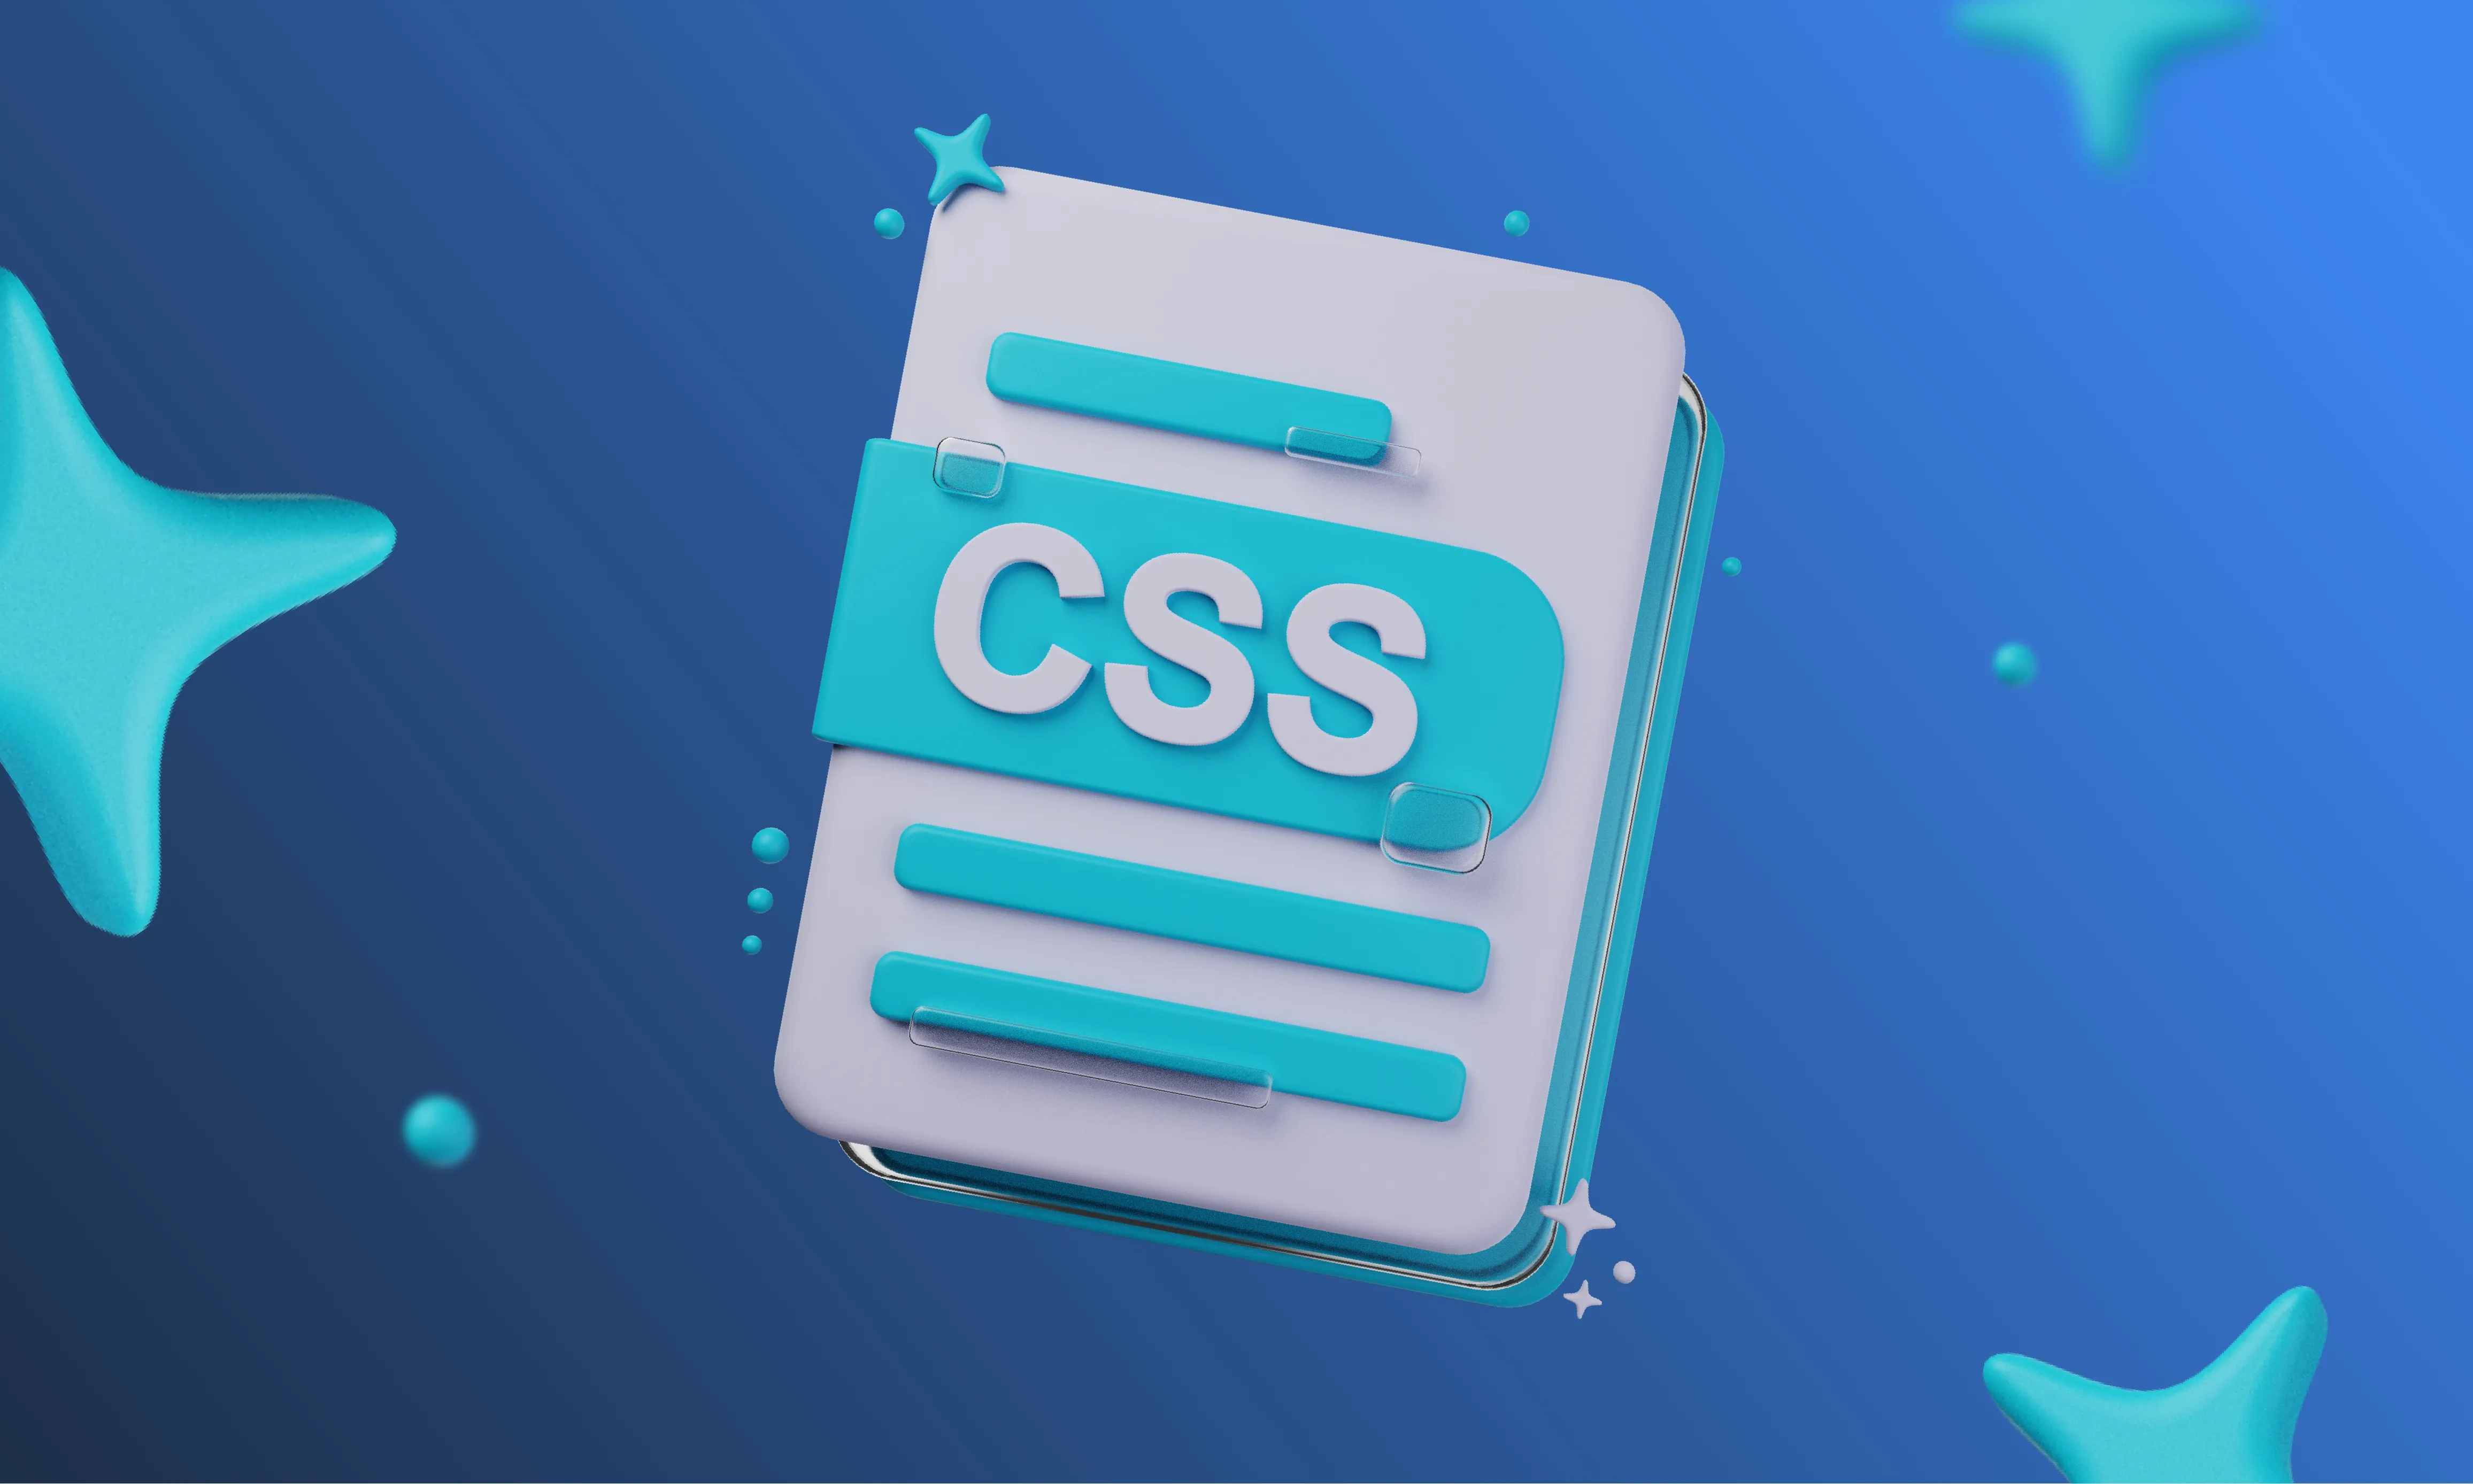 Что такое CSS